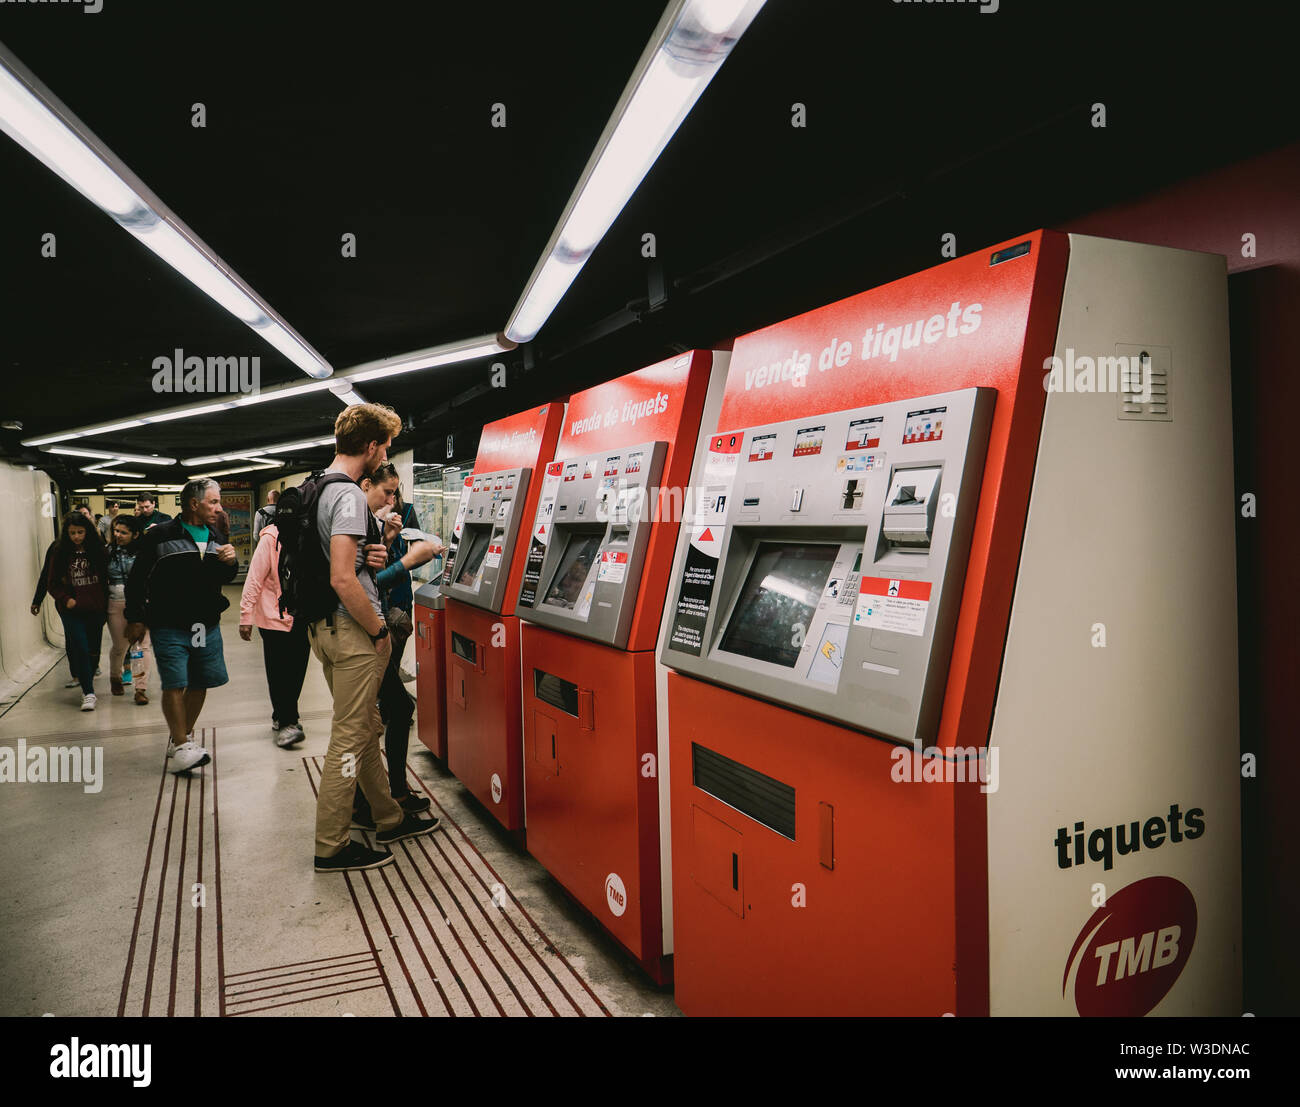 Lisbonne, Espagne - juin 3, 2018 : Les gens d'acheter des tickets de métro métro à l'intérieur des distributeurs automatiques de la station de métro de Barcelone TMB tiquets Banque D'Images